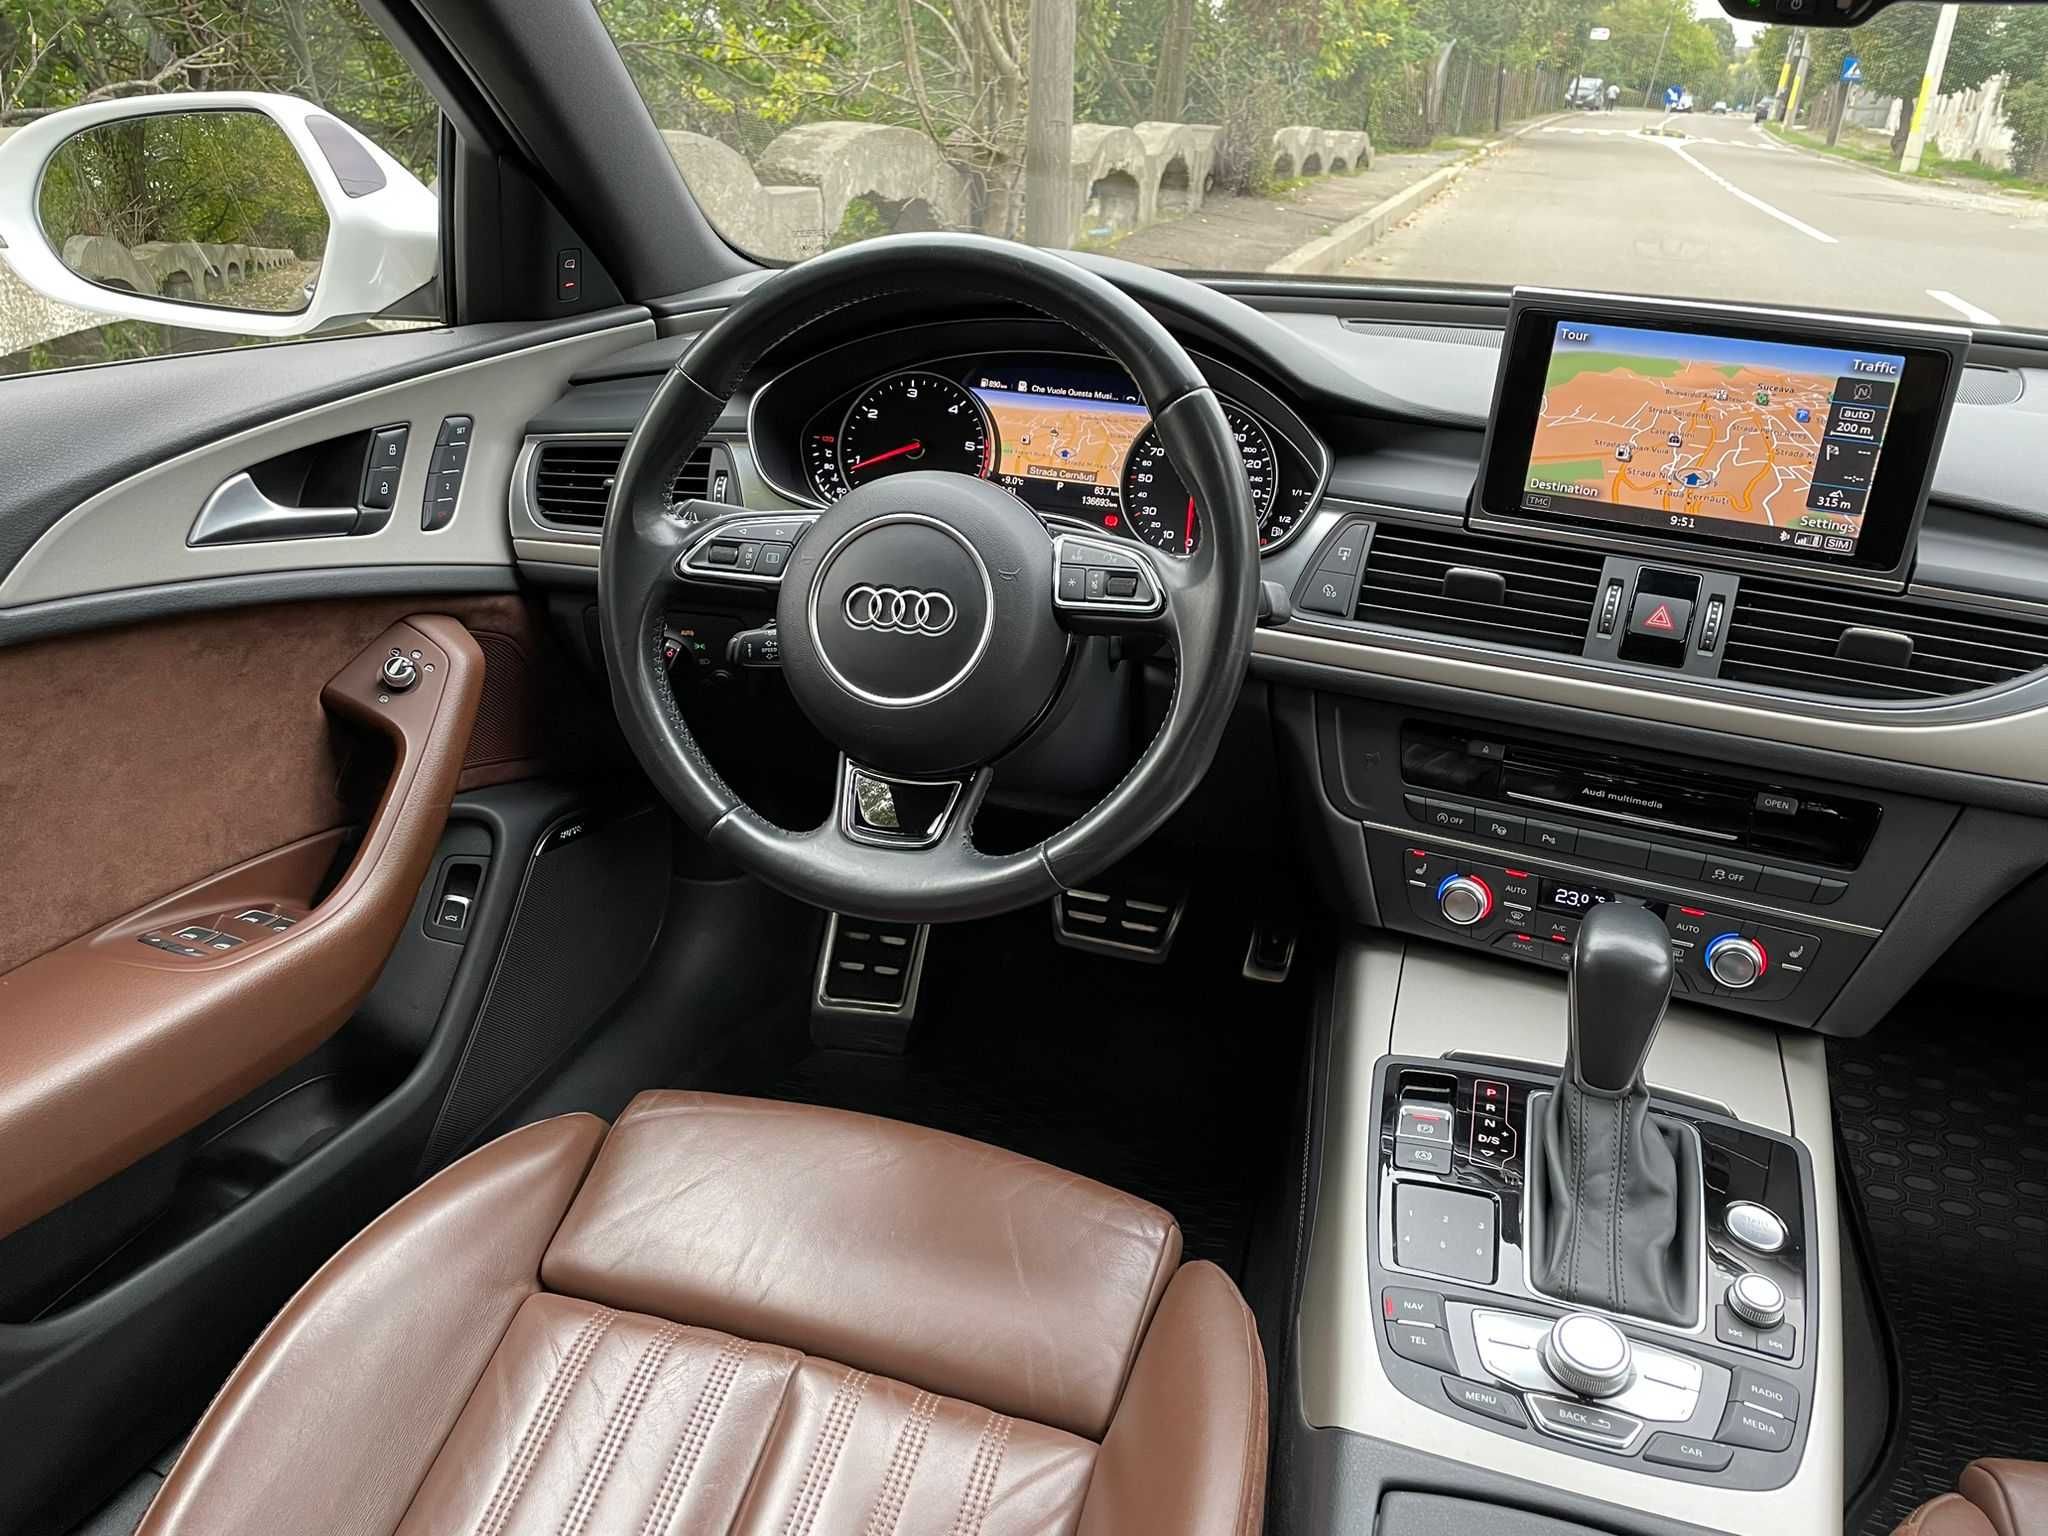 Audi A6 2.0 Tdi 2016 190 Cp Euro 6